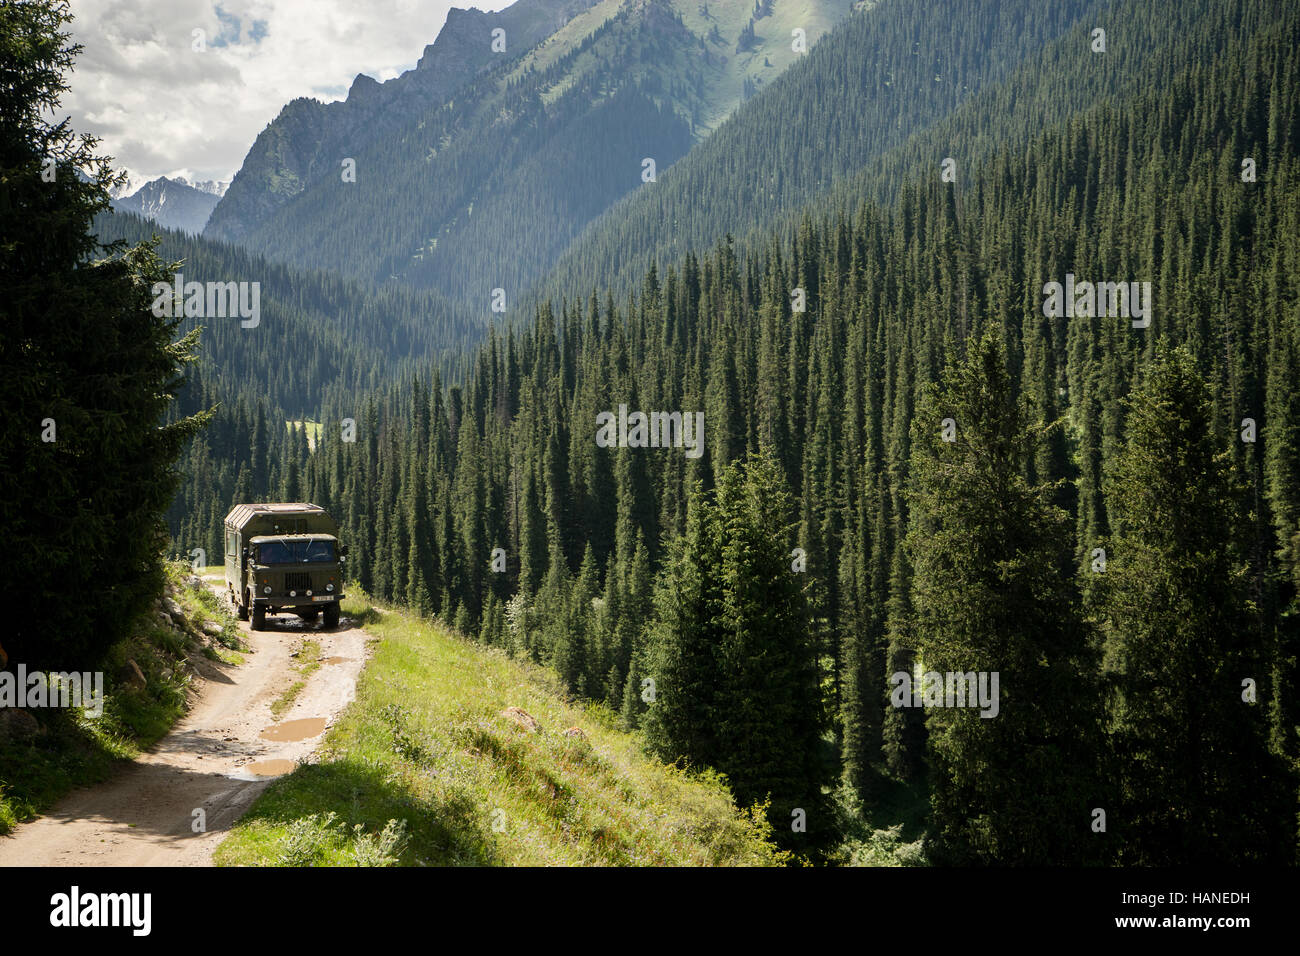 Ein Militär-LKW fährt auf einer unbefestigten Straße durch das Tal voll von Nadelbäumen Stockfoto